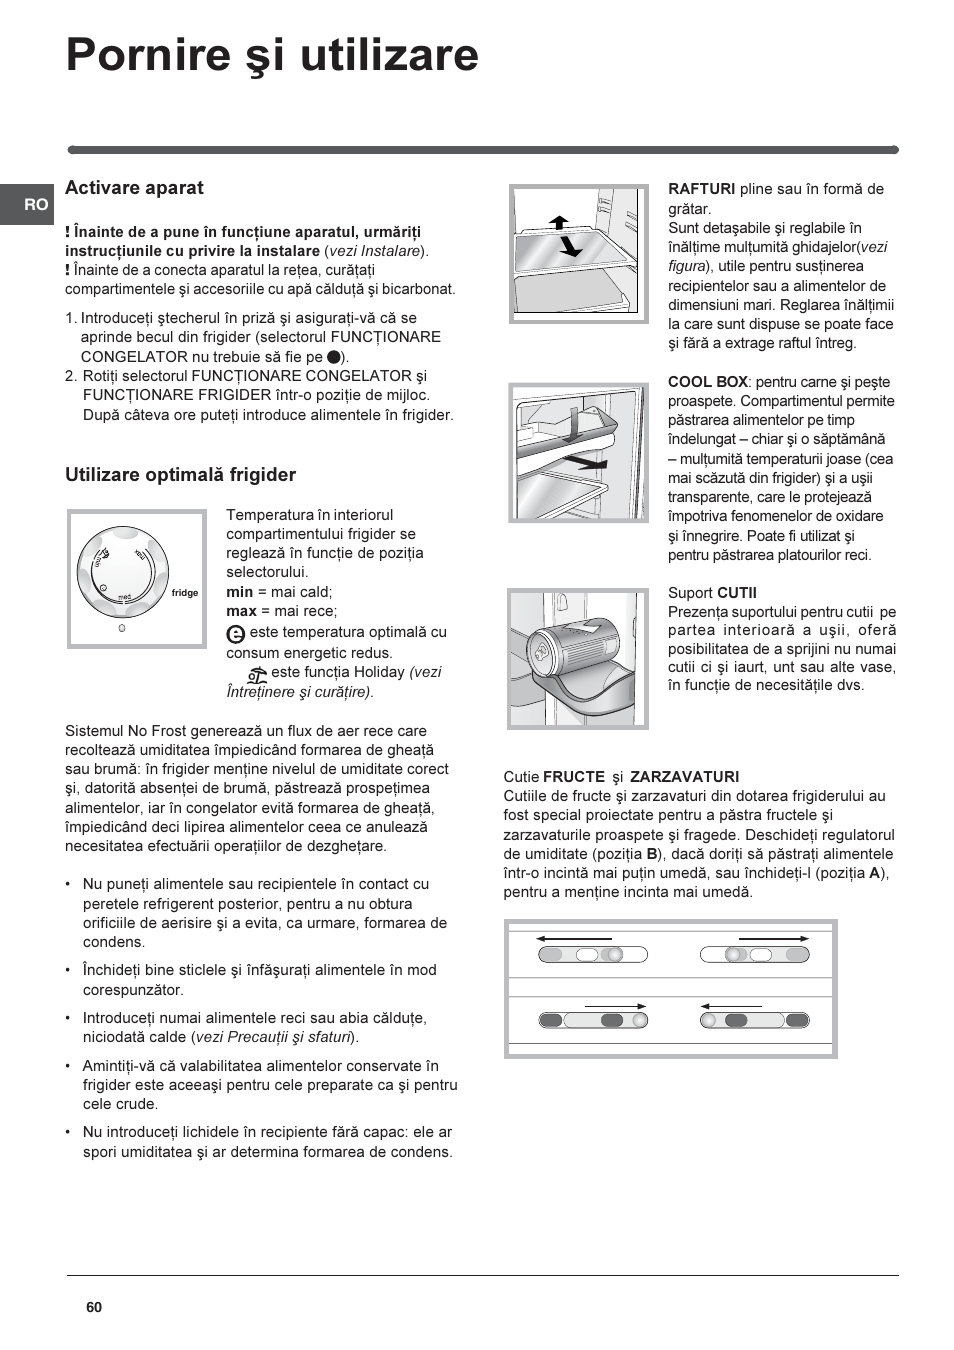 Pornire ºi utilizare, Activare aparat, Utilizare optimalã frigider | Indesit  TAAN-6-FNF User Manual | Page 60 / 64